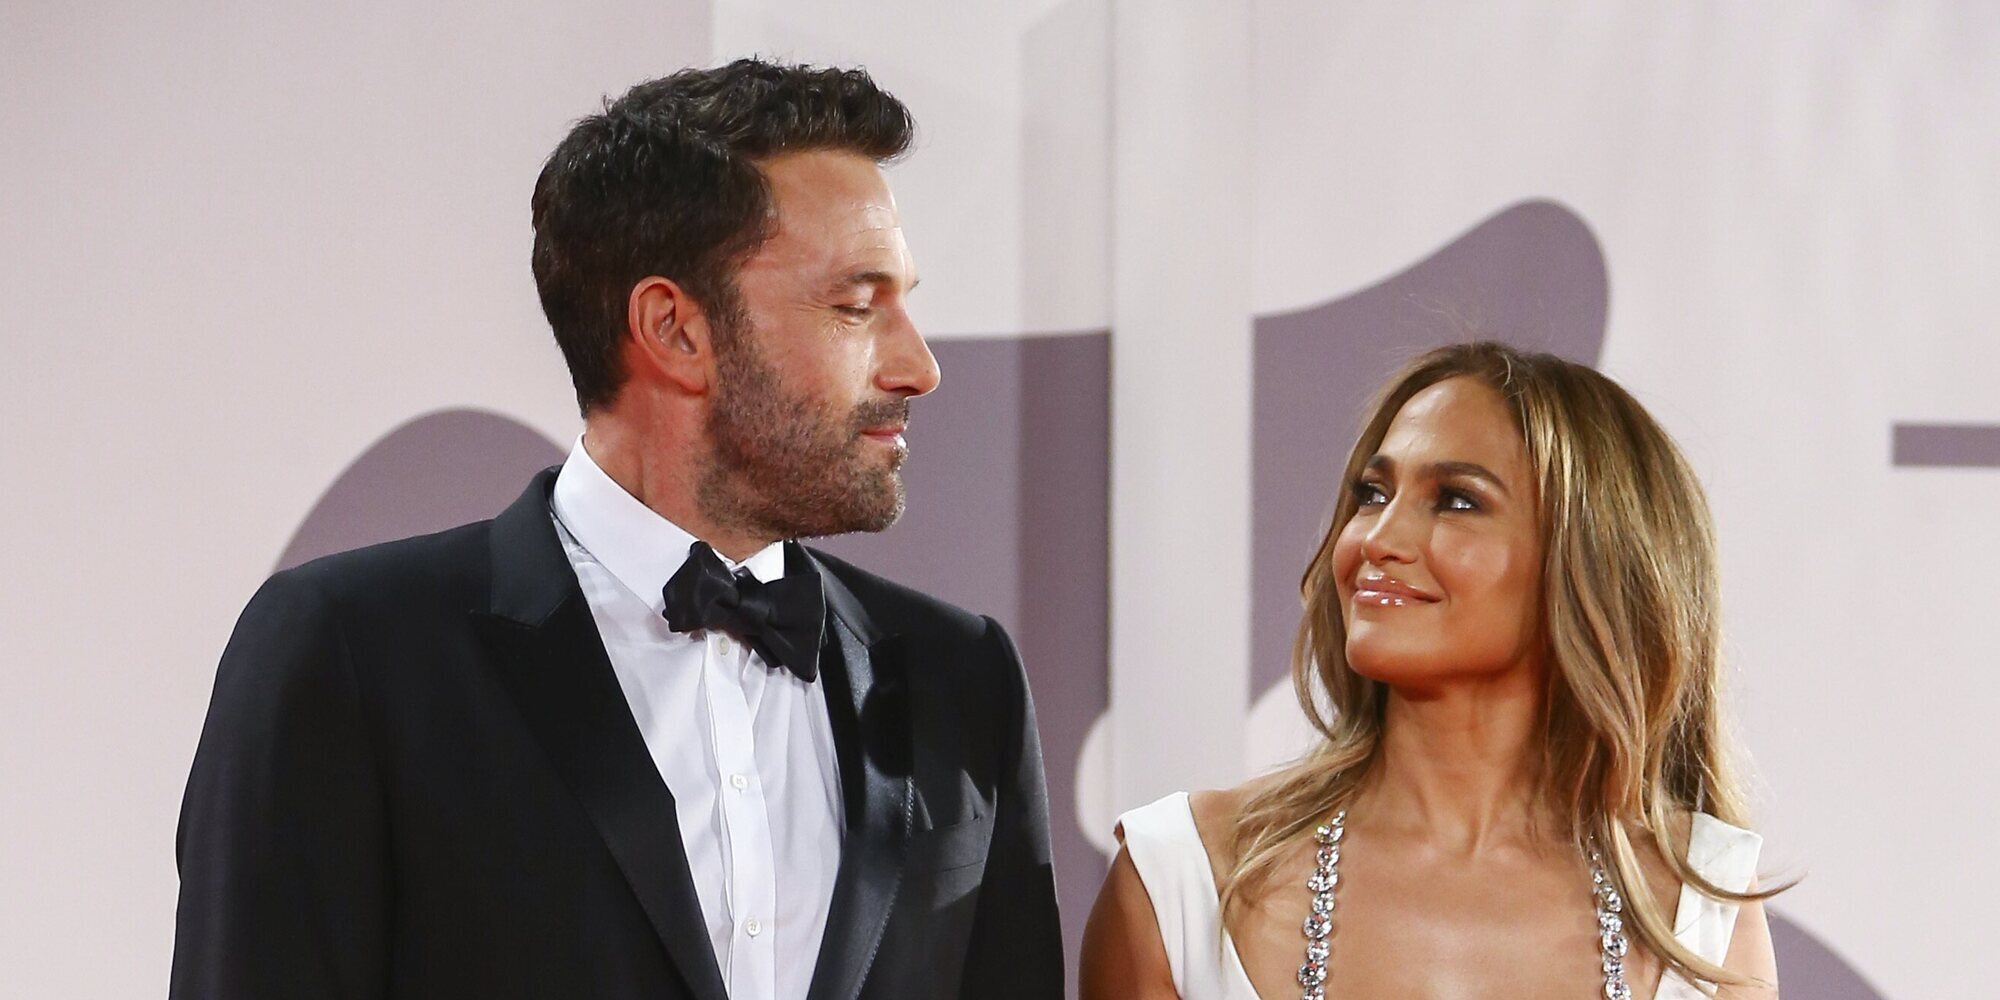 La boda entre Jennifer Lopez y Ben Affleck será oficiada por un íntimo amigo de la artista